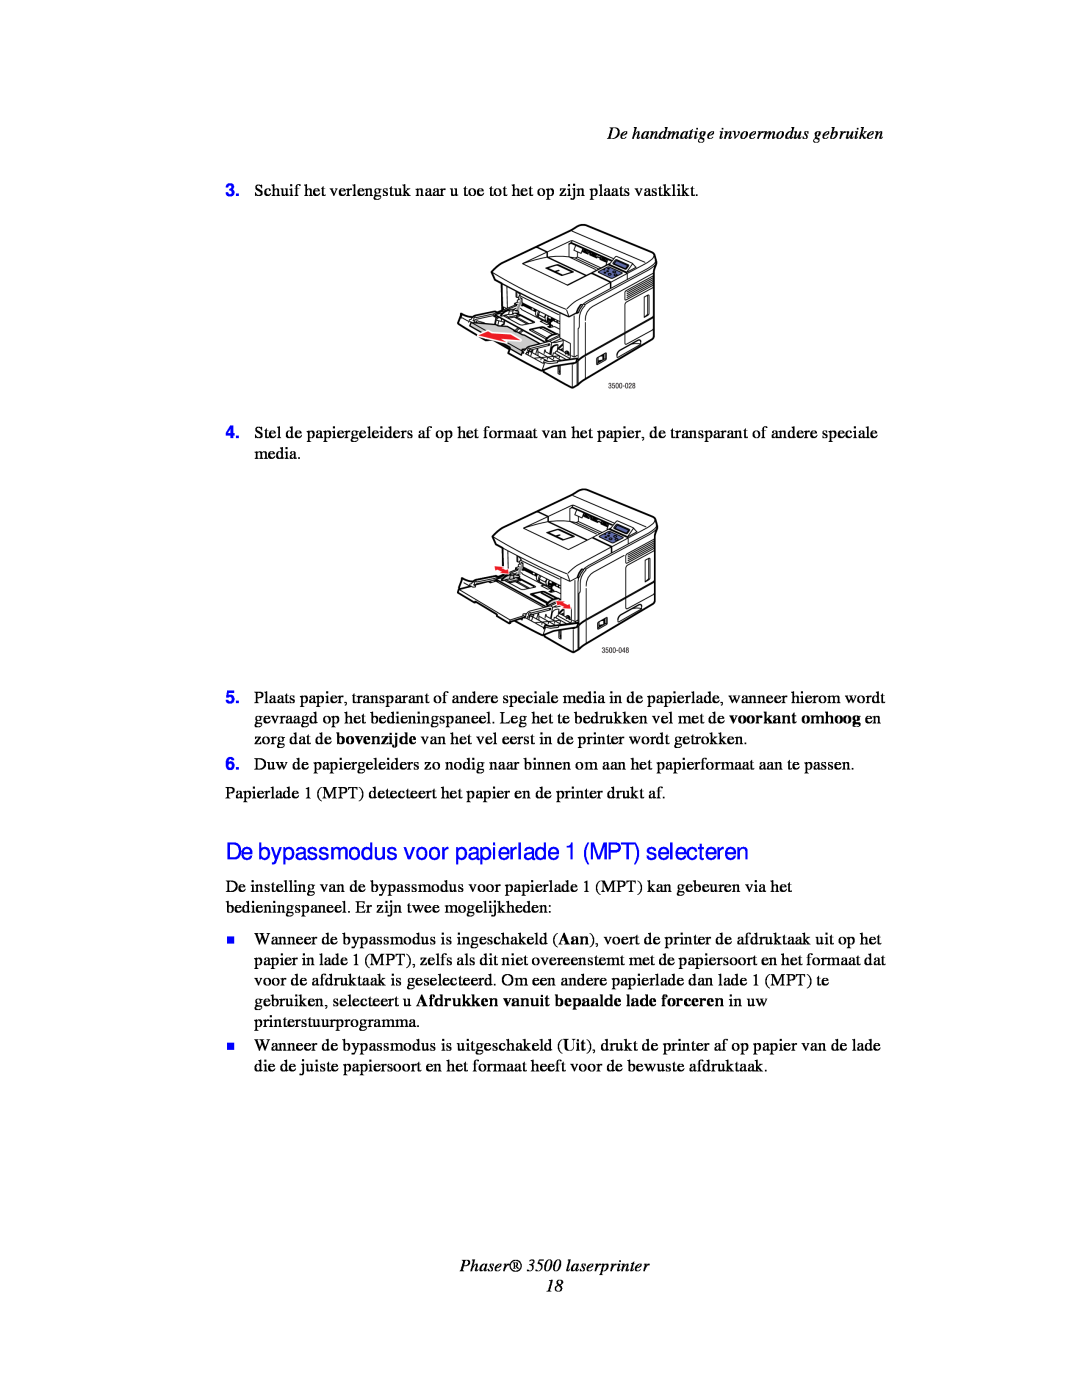 Xerox De bypassmodus voor papierlade 1 MPT selecteren, De handmatige invoermodus gebruiken, Phaser 3500 laserprinter 